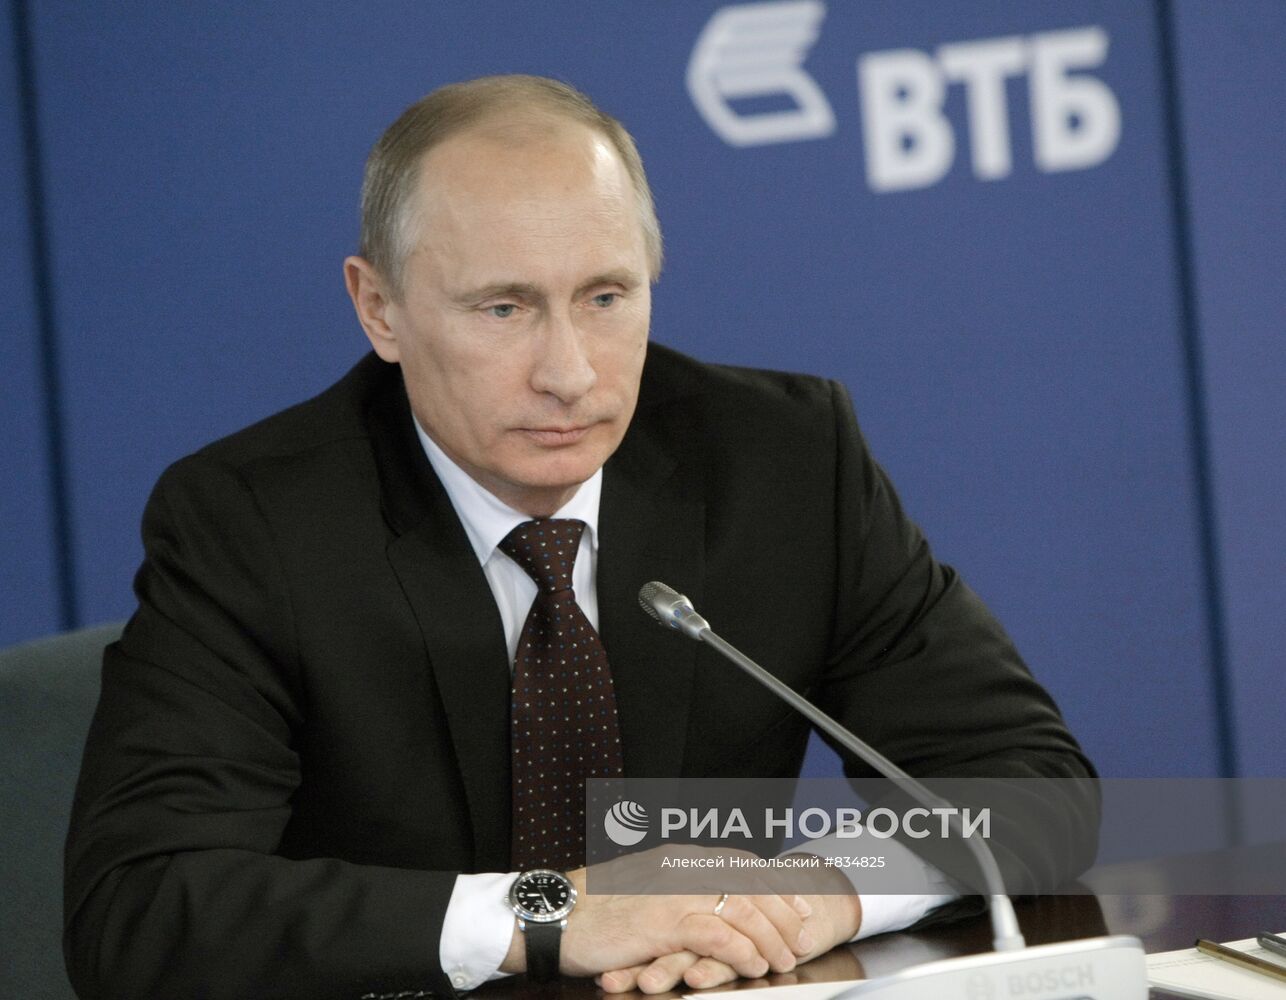 Владимир Путин посетил новый офис ОАО "Банк ВТБ"